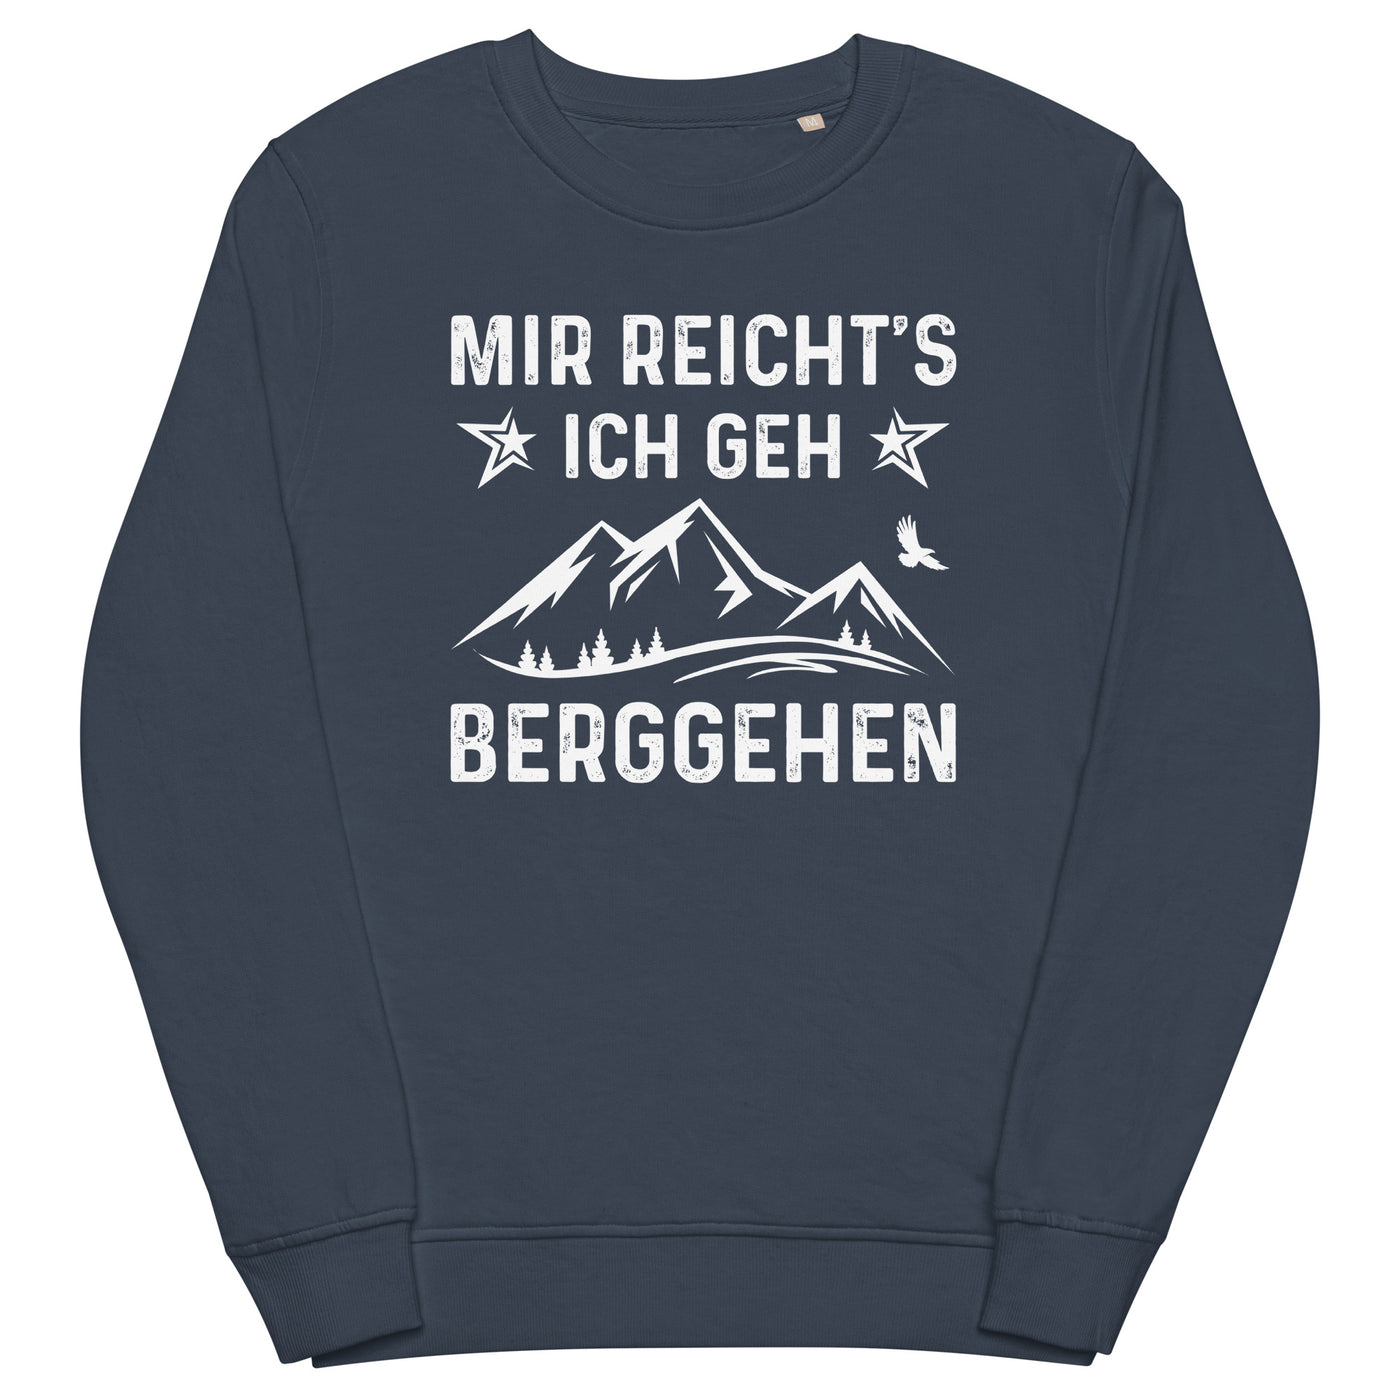 Mir Reicht's Ich Gen Berggehen - Unisex Premium Organic Sweatshirt berge xxx yyy zzz French Navy